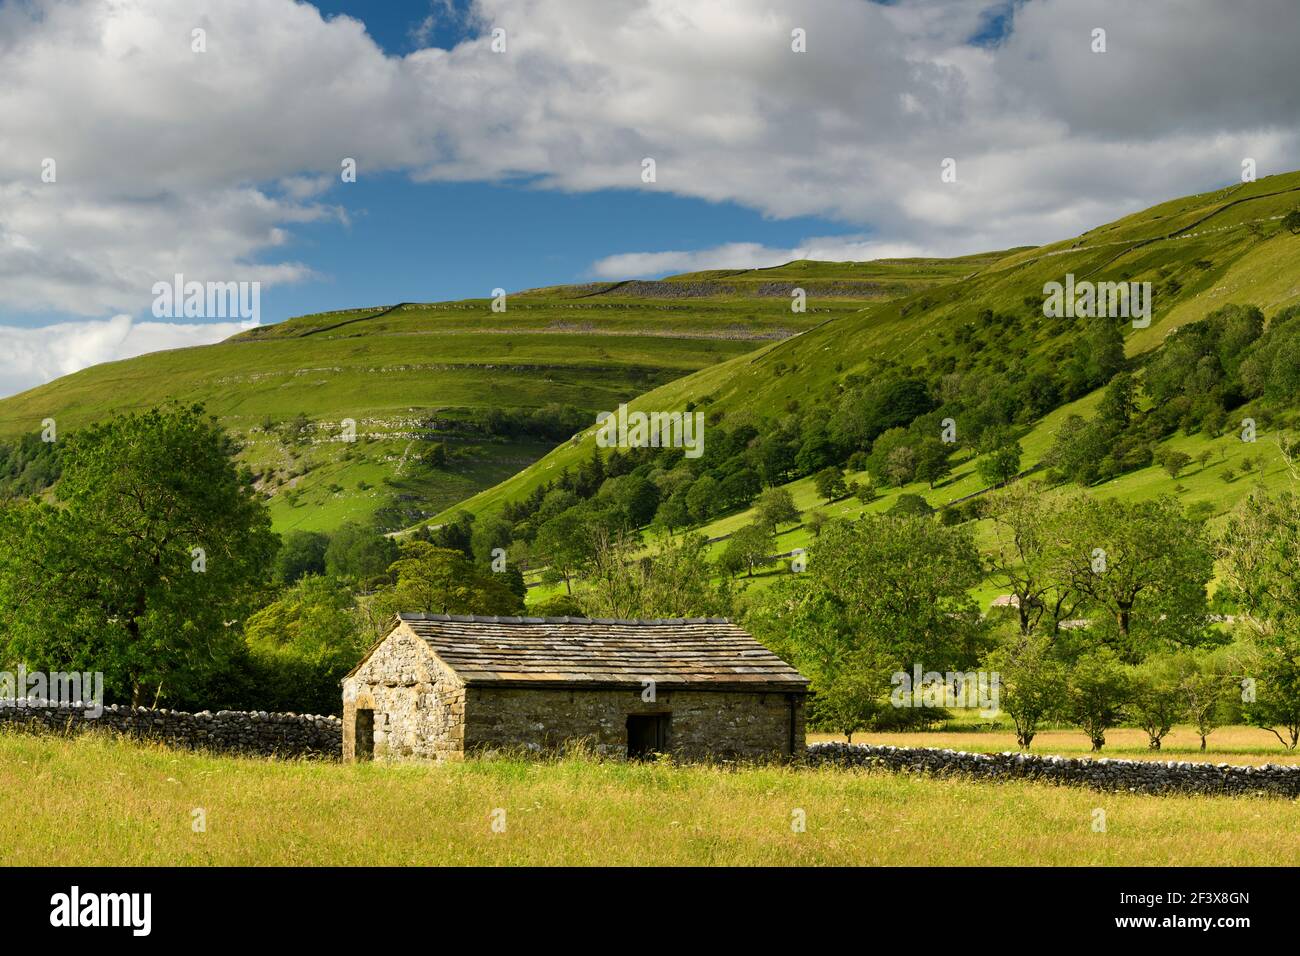 Bella campagna soleggiata Wharfedale (valle, colline, fienile campo, muri a secco, pascoli agricoli, High Hills) - Yorkshire Dales, Inghilterra, Regno Unito. Foto Stock